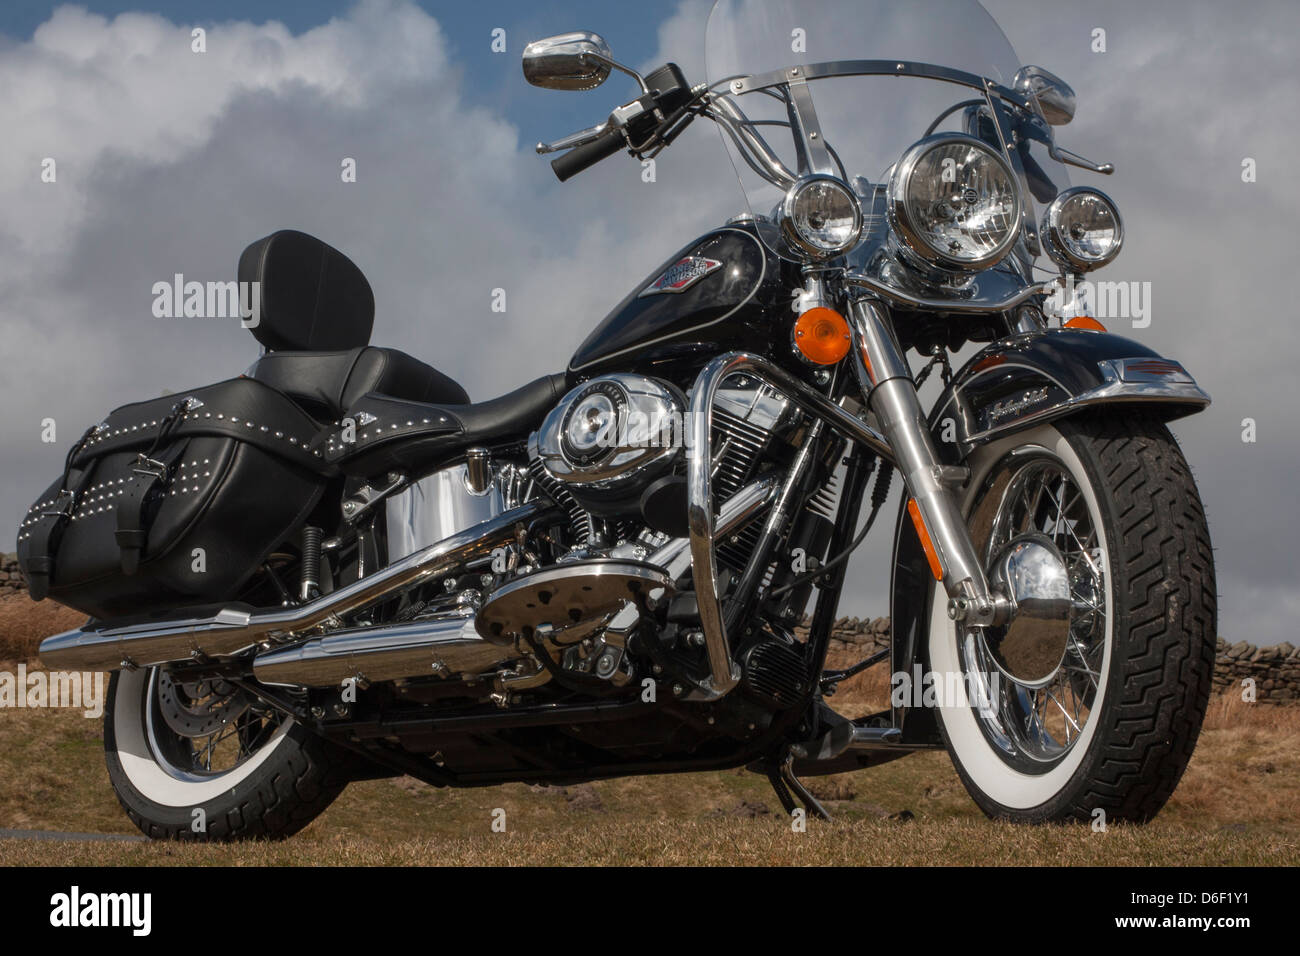 Harley Davidson FLSTC Softail Heritage Classic 2013 mostrato contro un sfondo brughiera Foto Stock